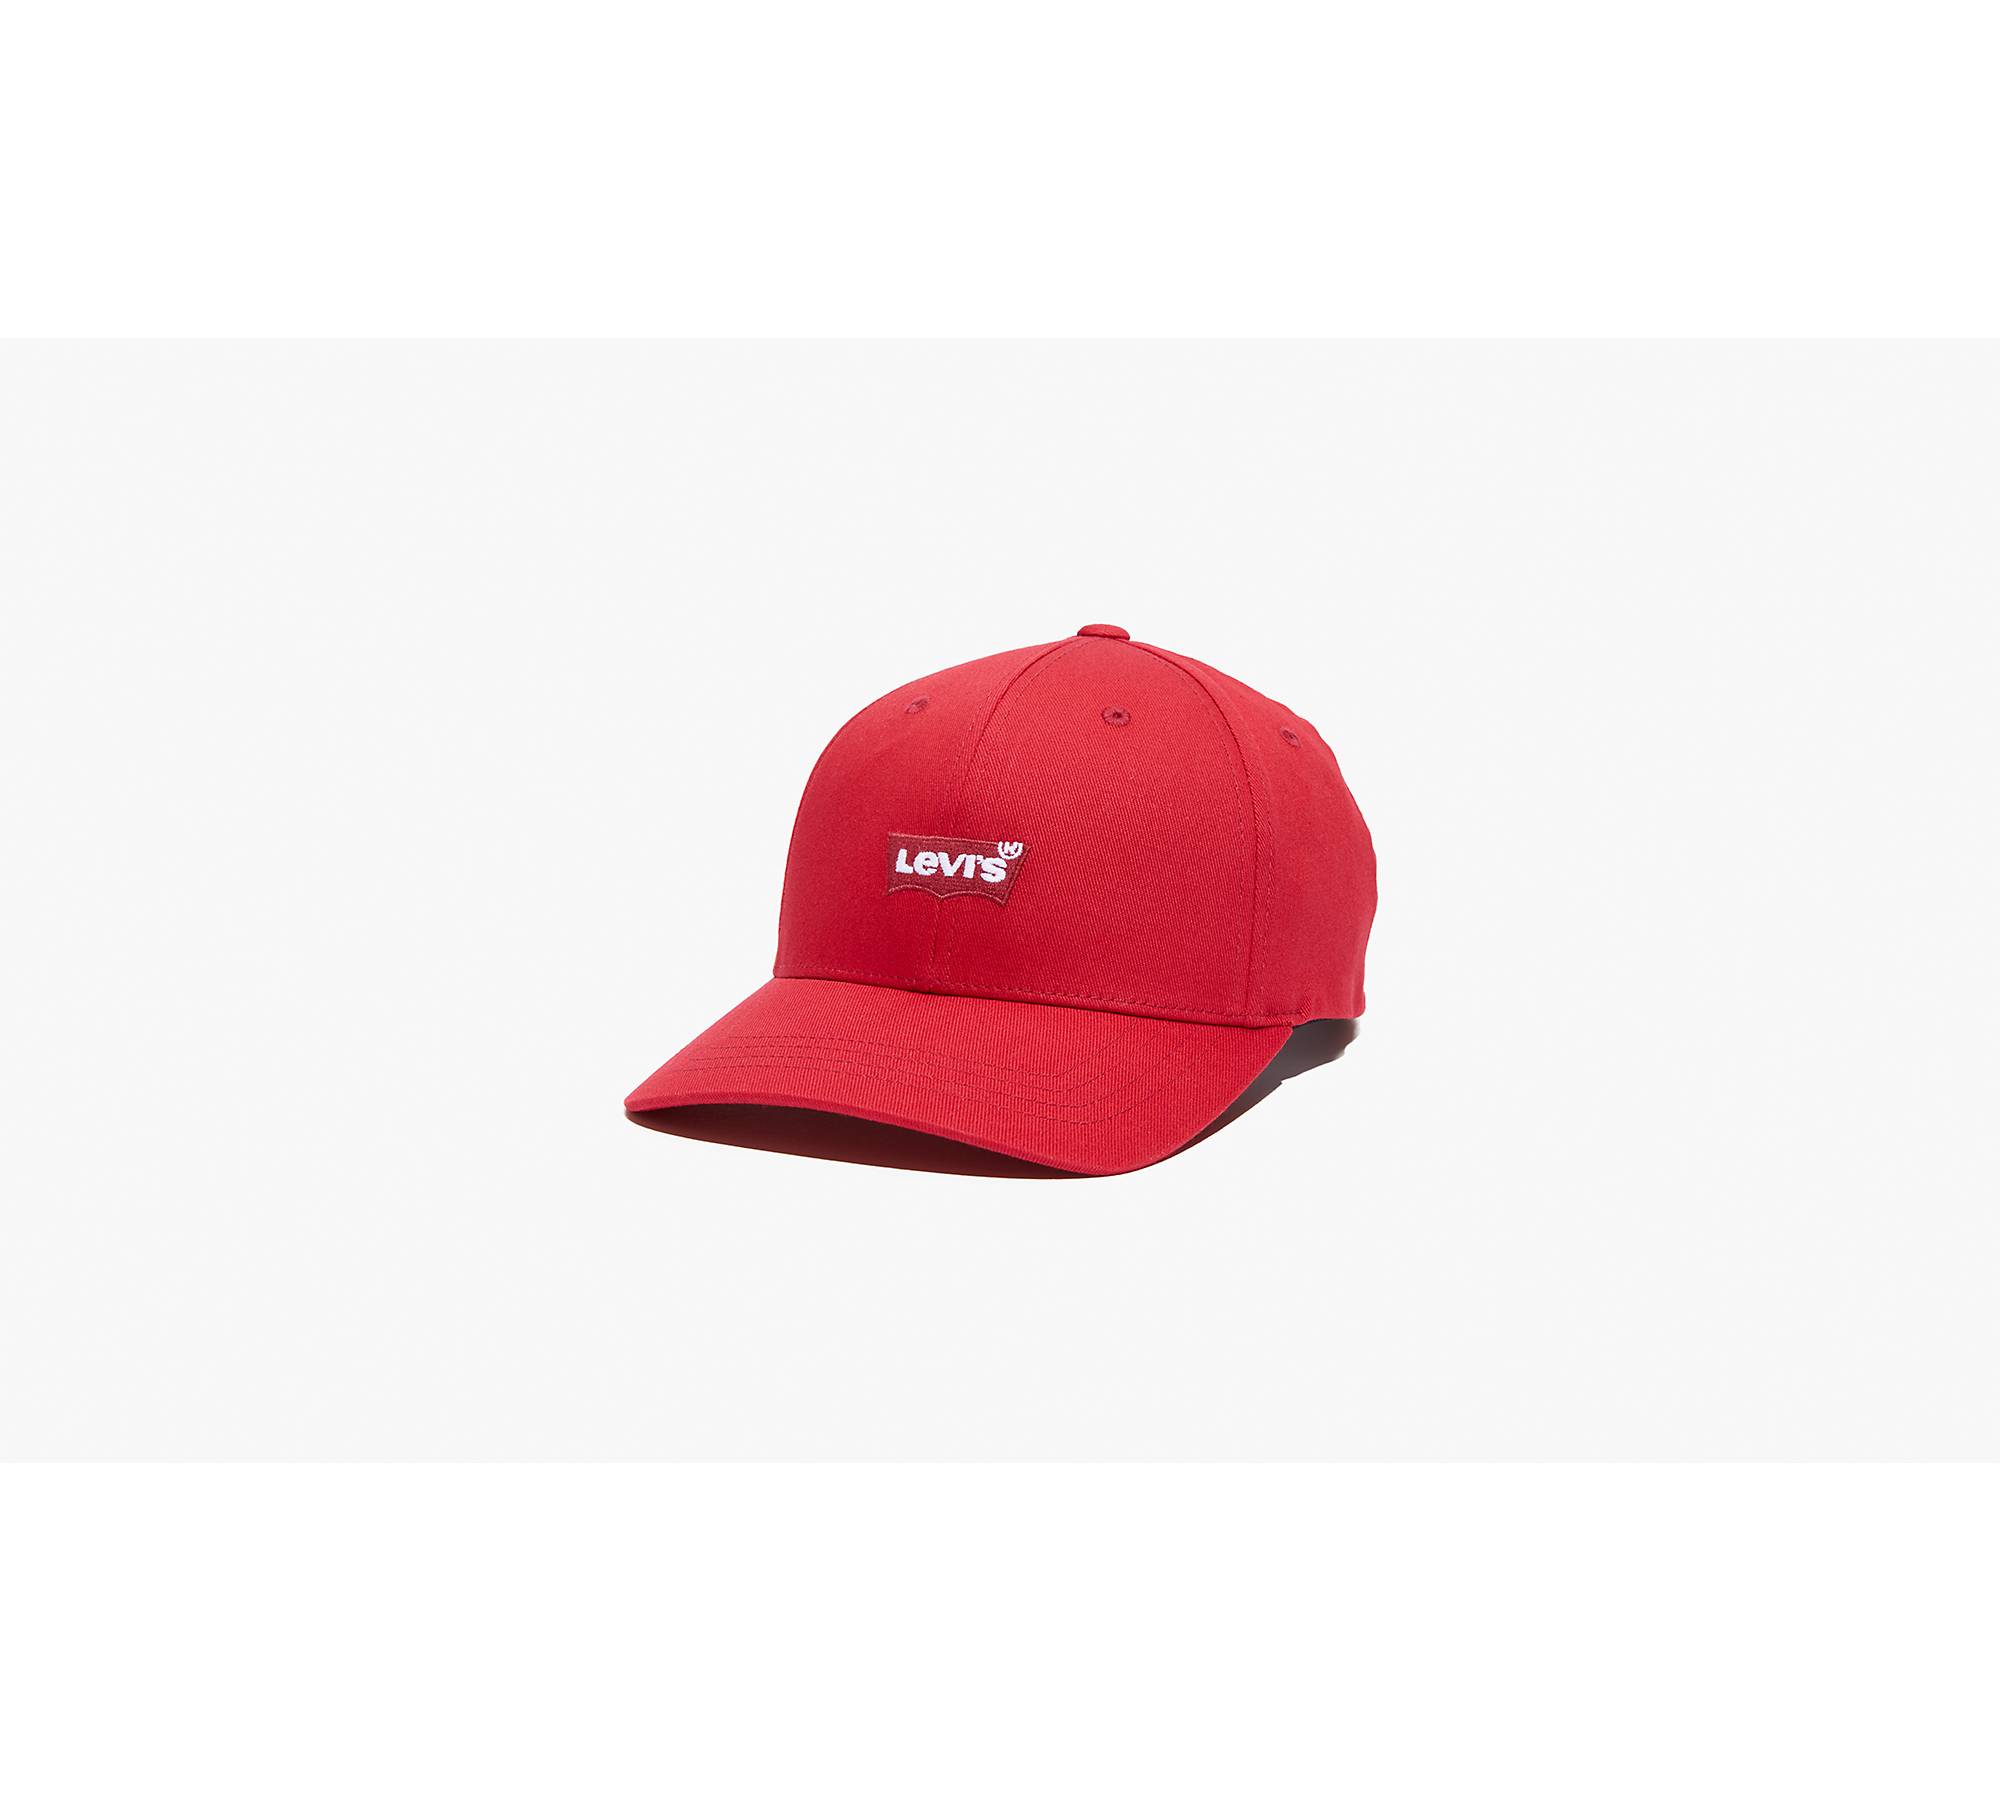 Can you tailor a Flexfit cap?